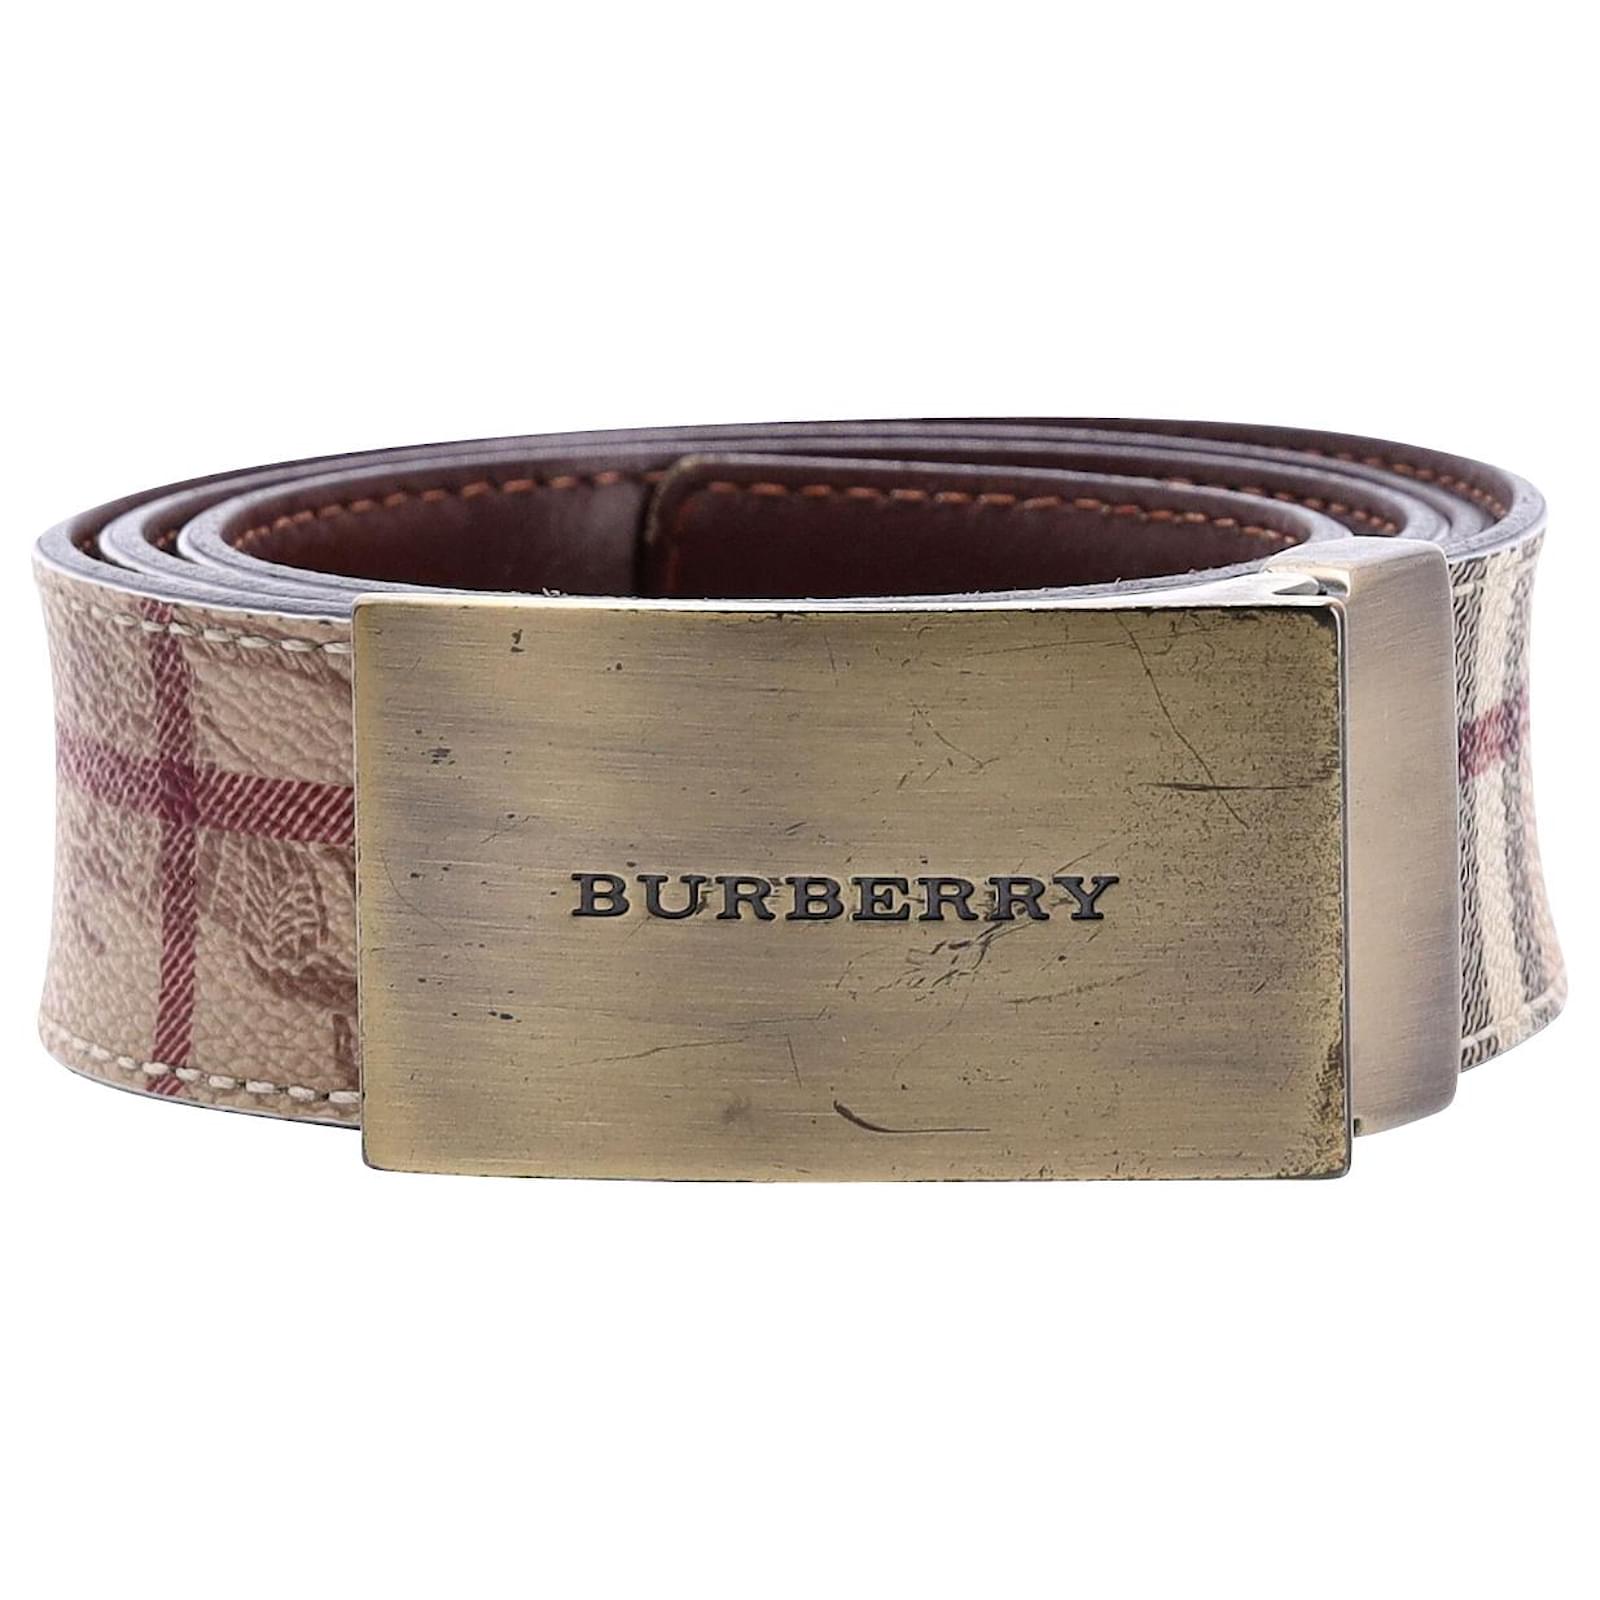 BURBERRY Men's Checks Belt